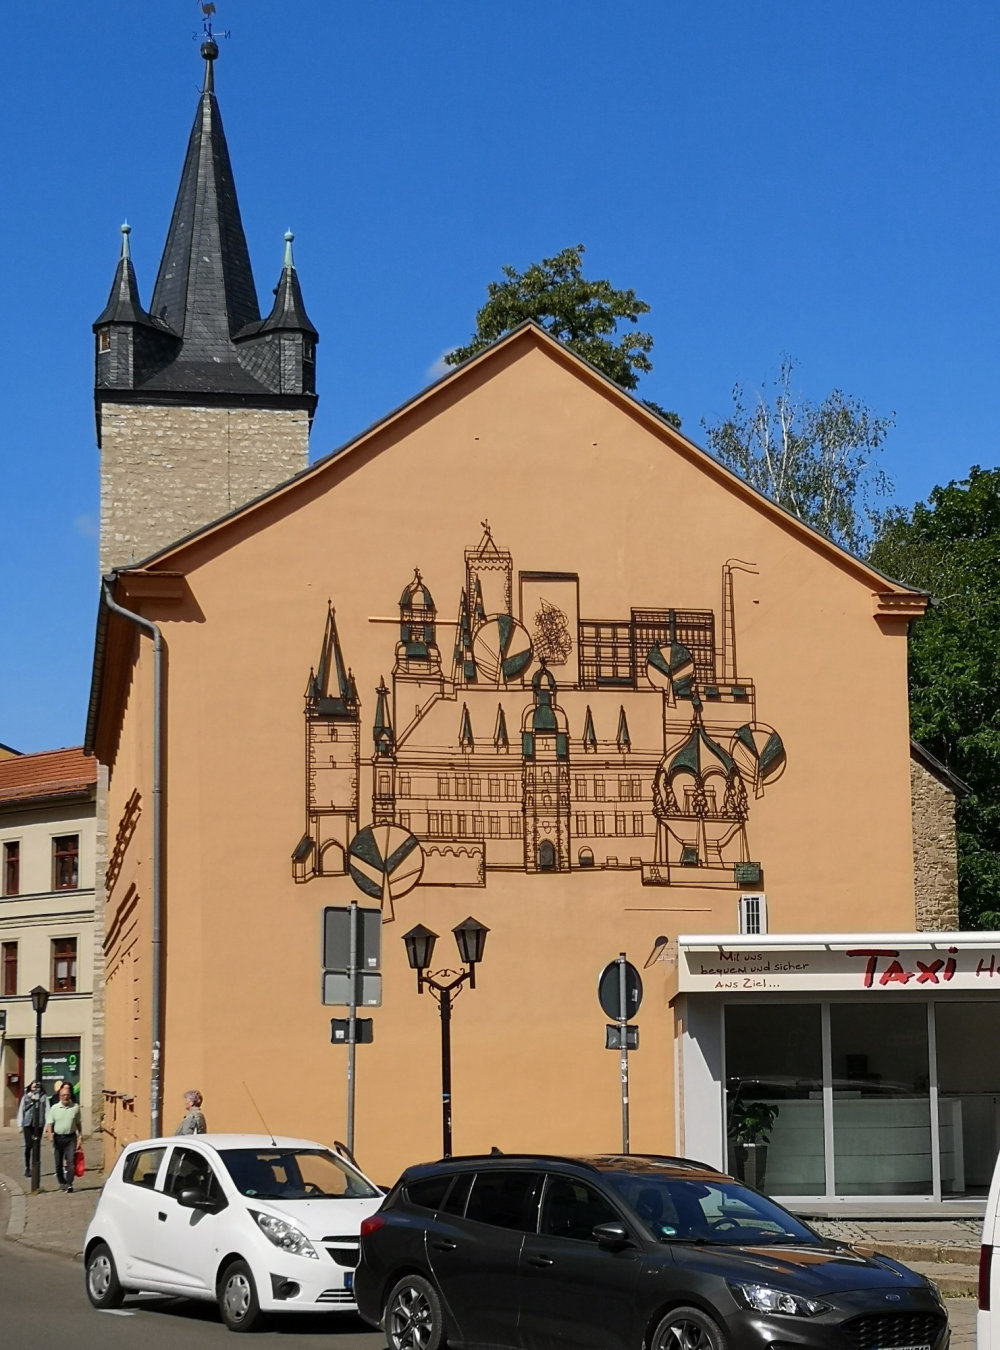 mural in Aschersleben by artist unknown.